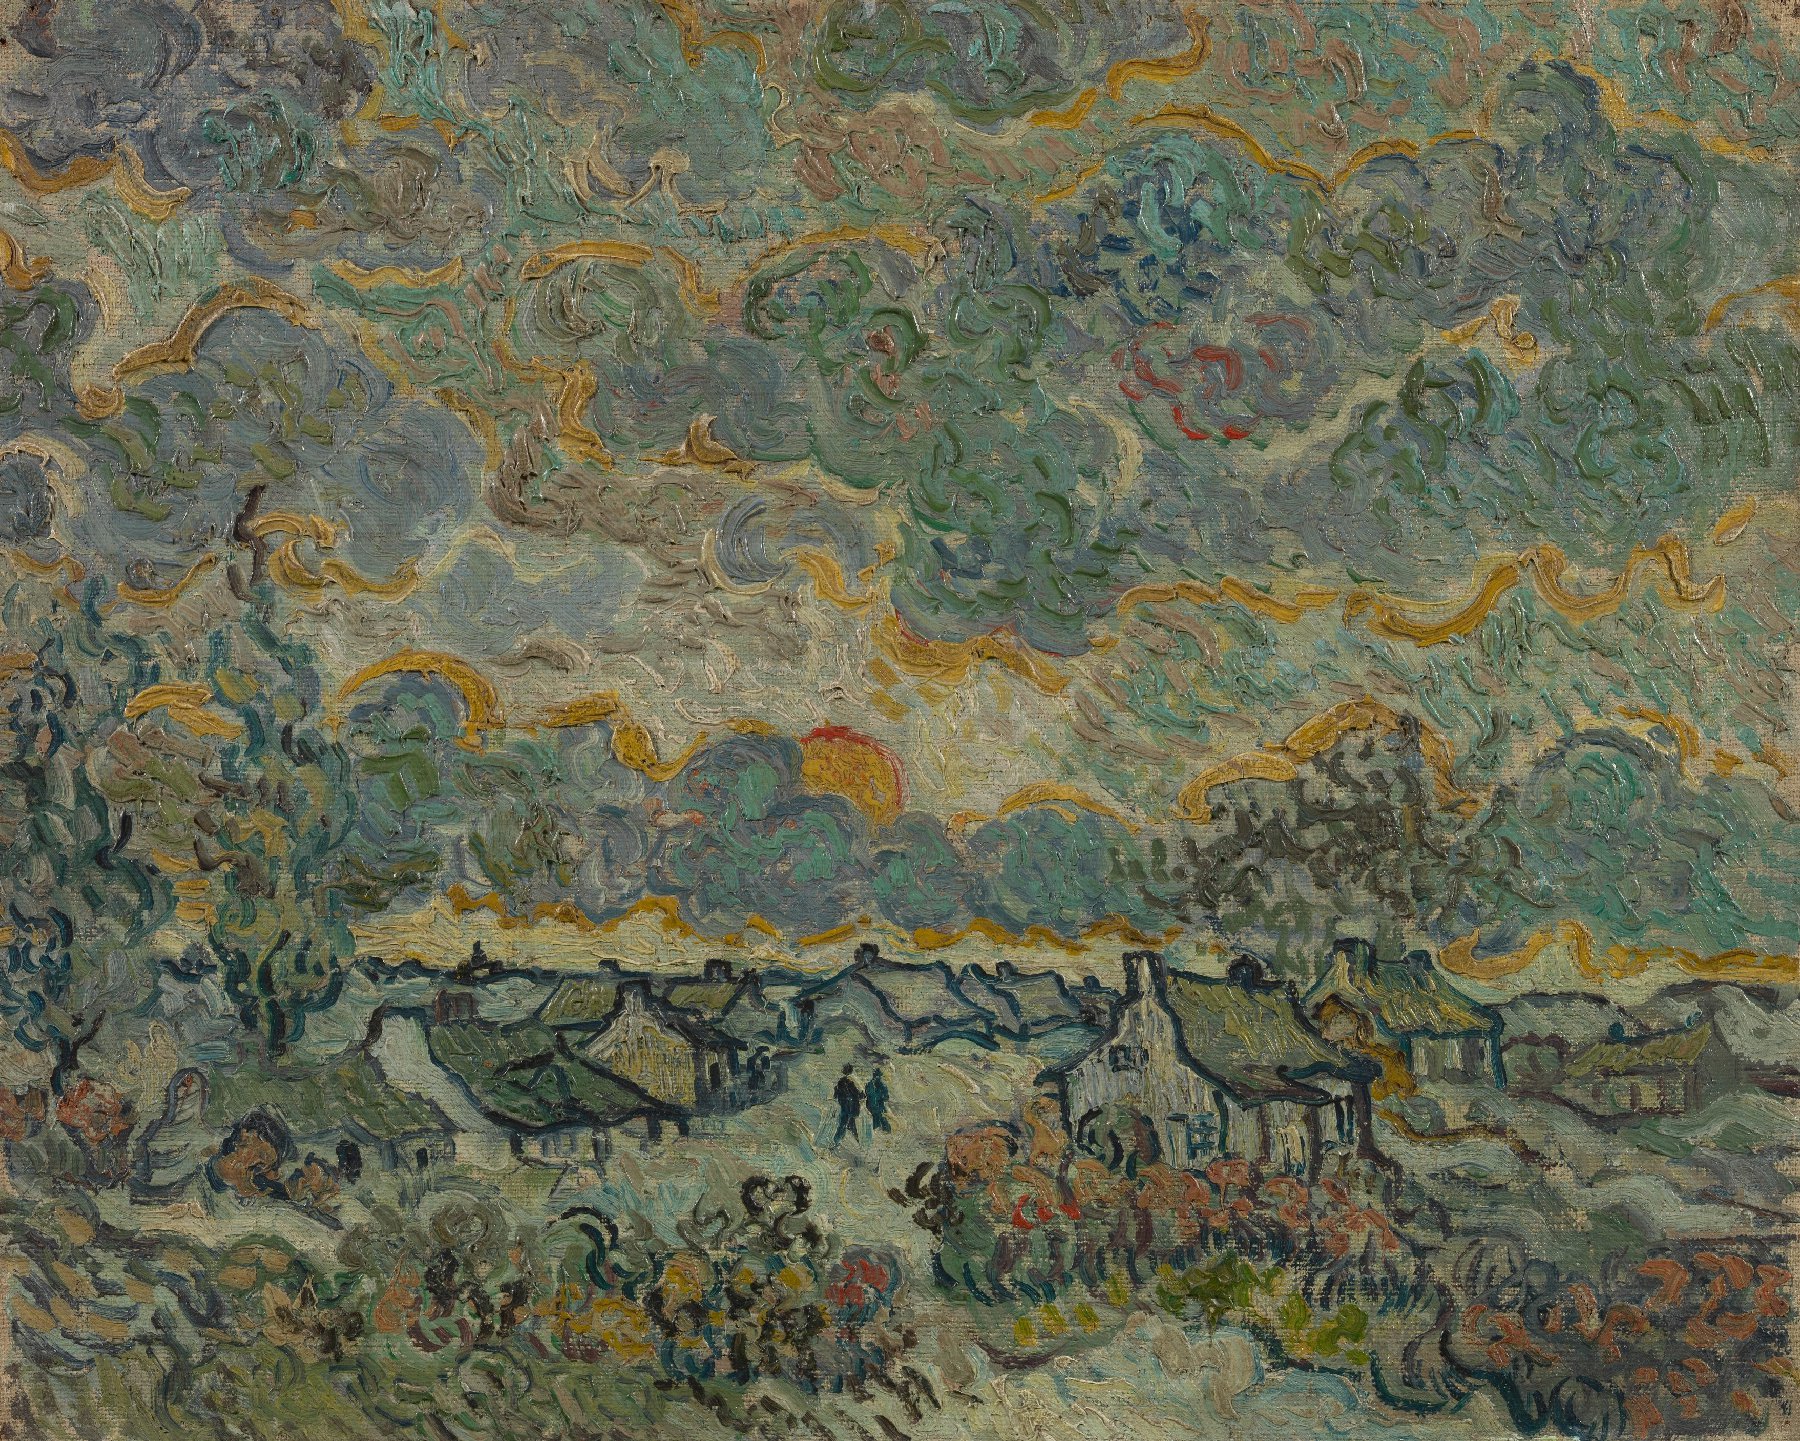 Herinnering aan Brabant Vincent van Gogh (1853 - 1890), Saint-Rémy-de-Provence, maart-april 1890